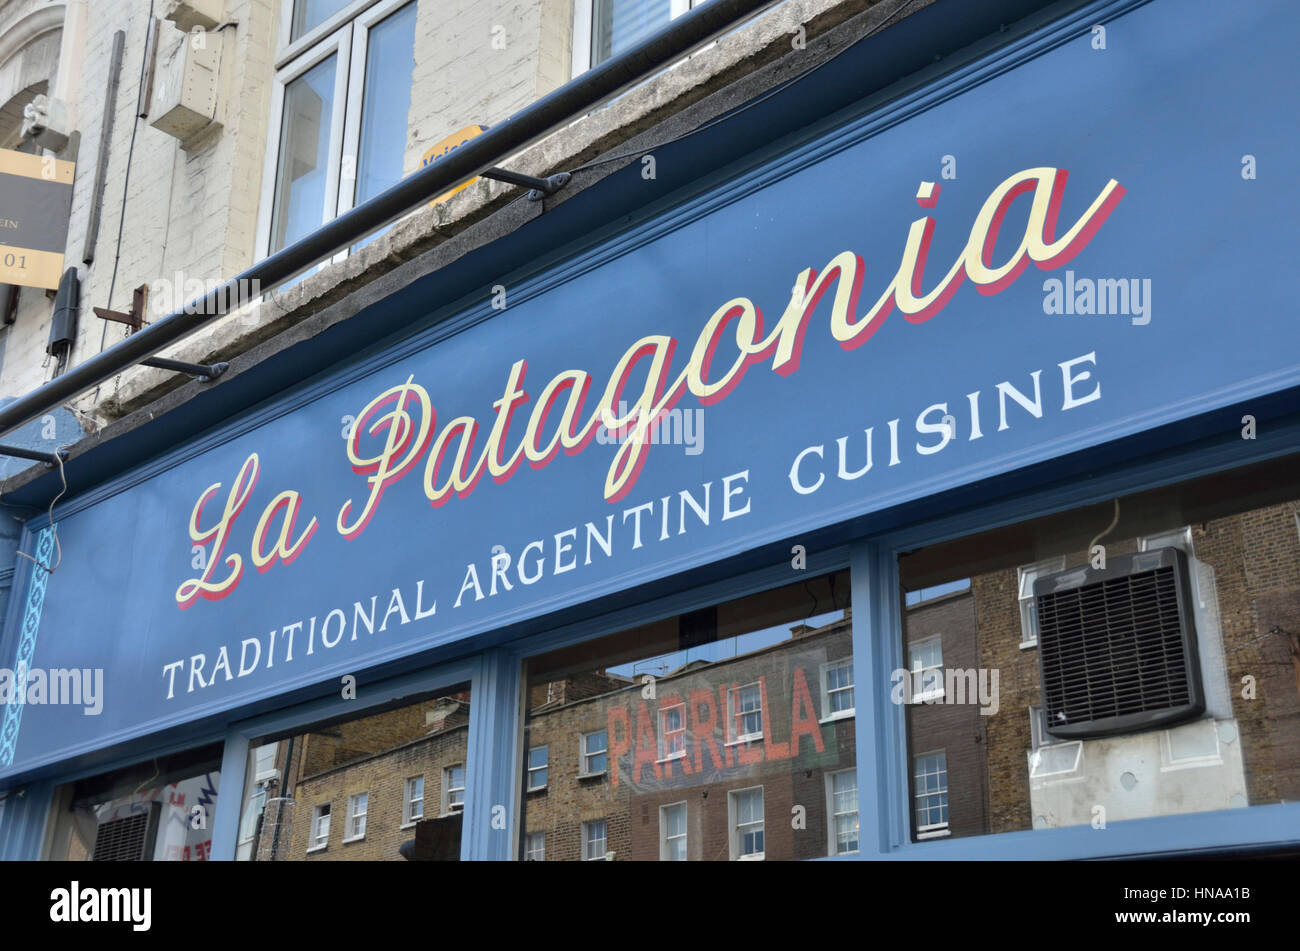 La Patagonia Argentina tradicional restaurante en la ciudad de Camden, Londres, Reino Unido. Foto de stock